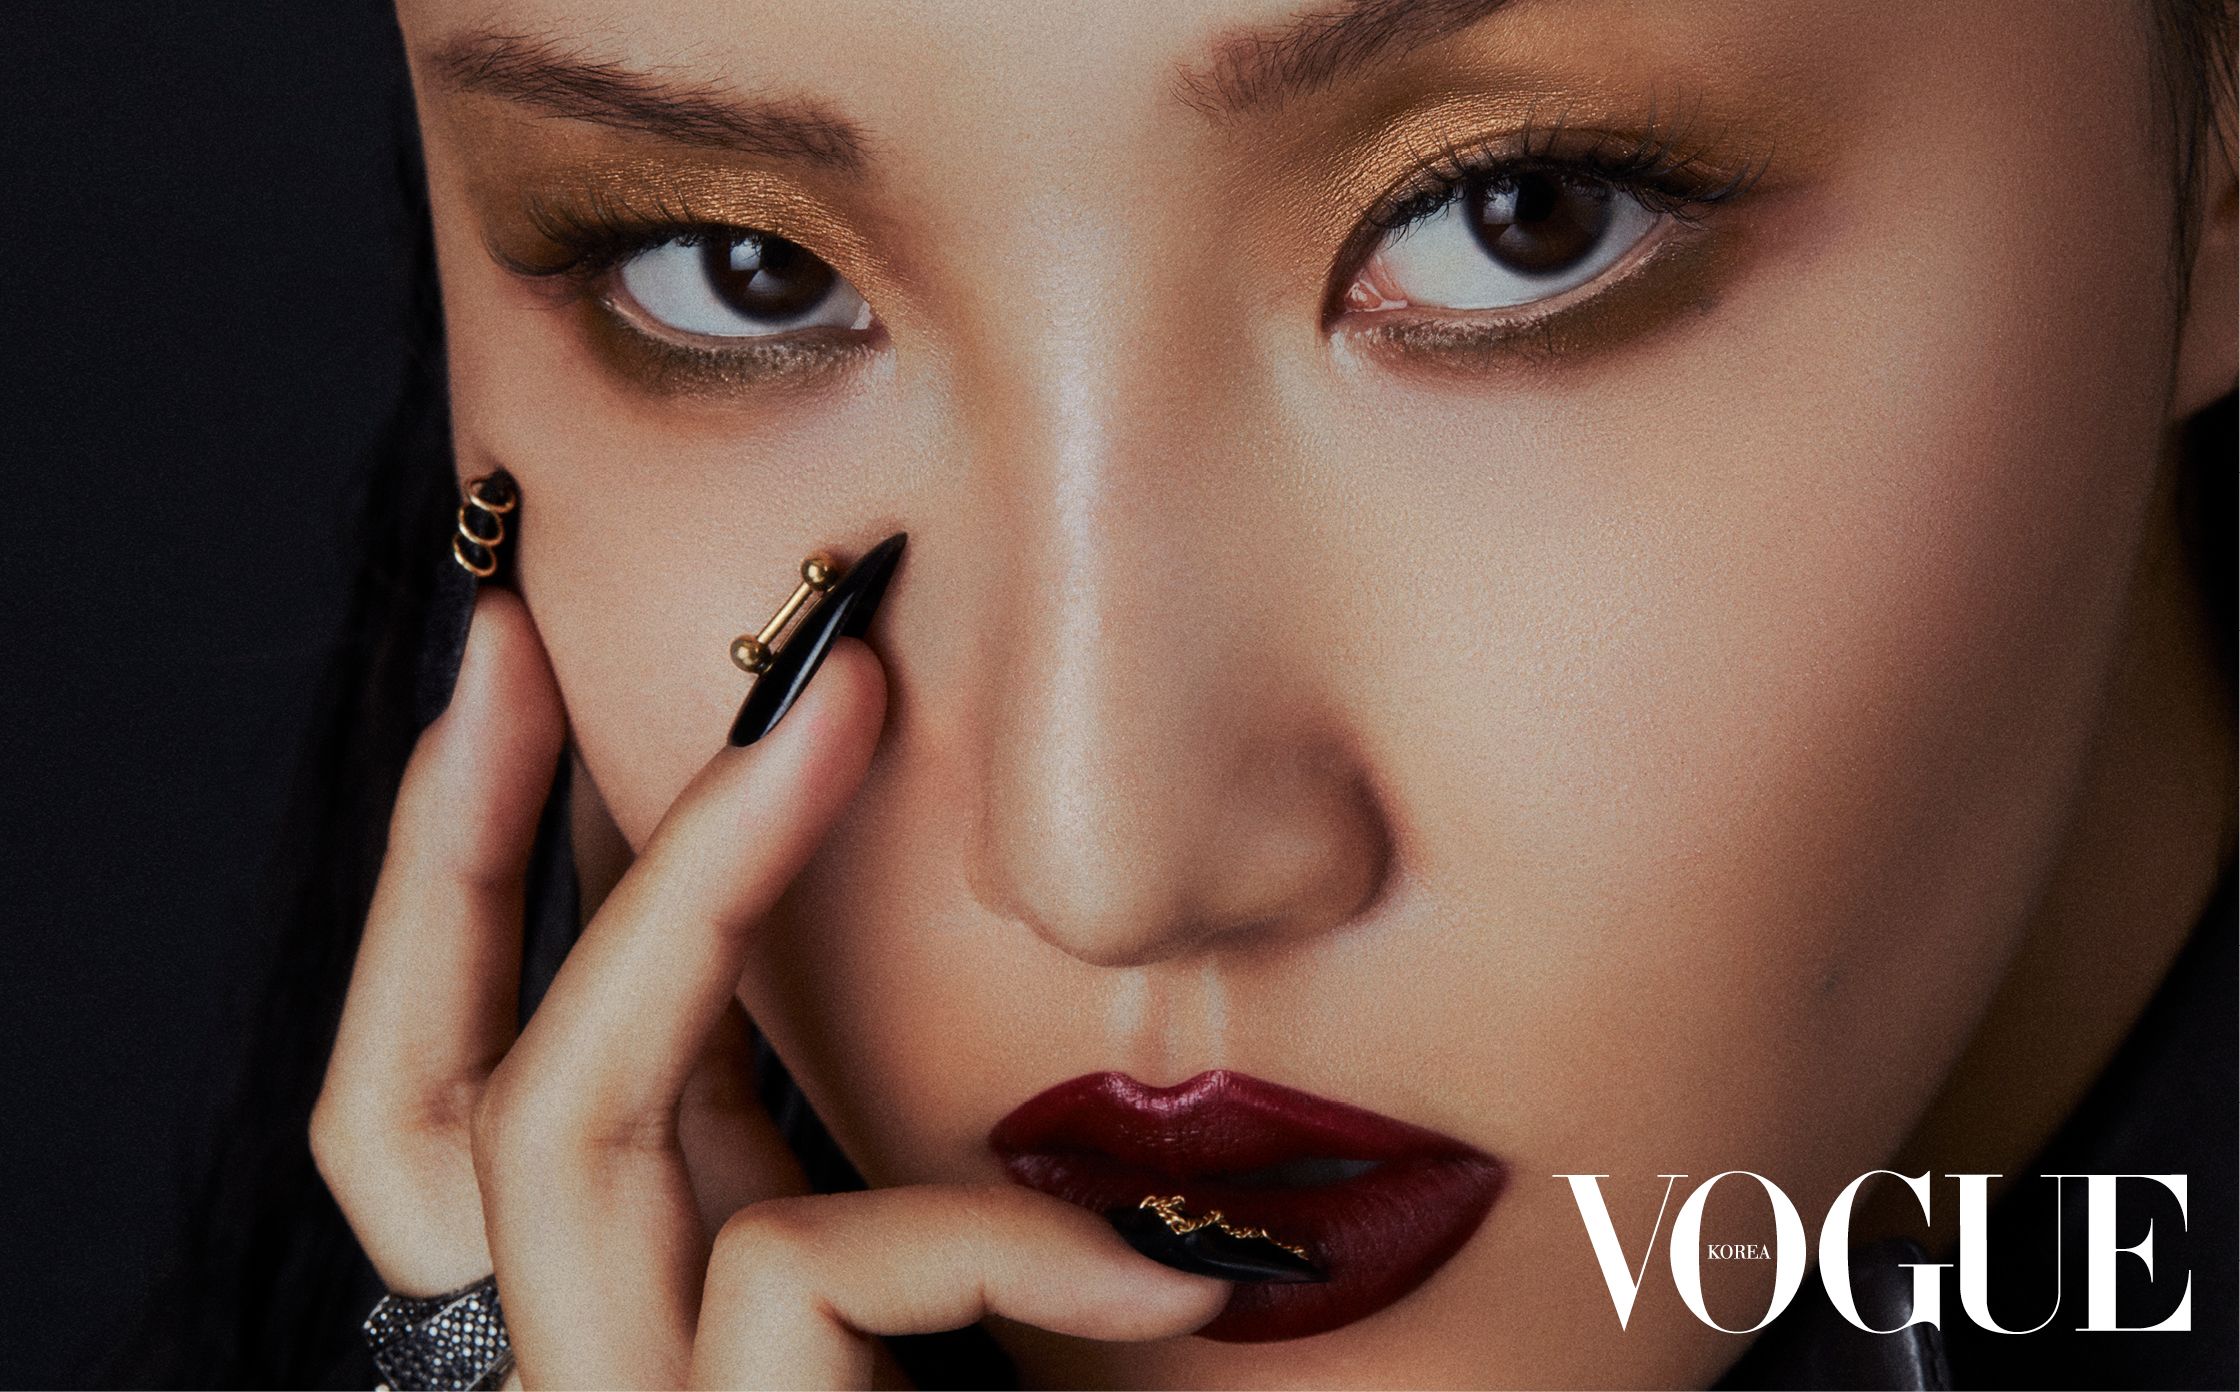 Хваса (MAMAMOO) в фотосессии для Vogue Korea